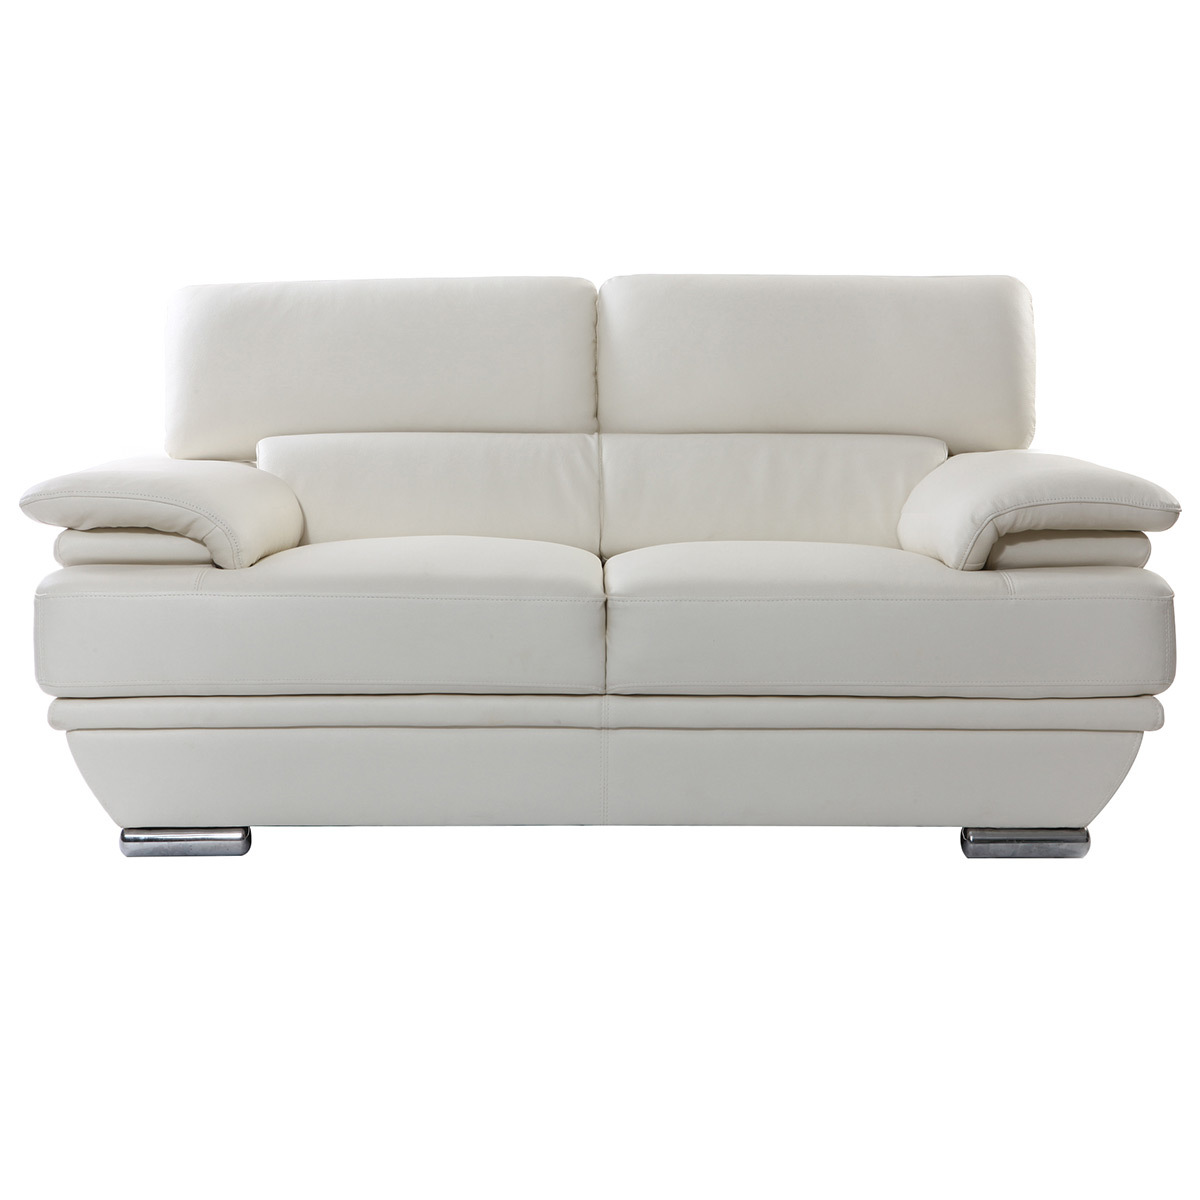 Canapé design avec têtières ajustables 2 places cuir blanc et acier chromé EWING vue1